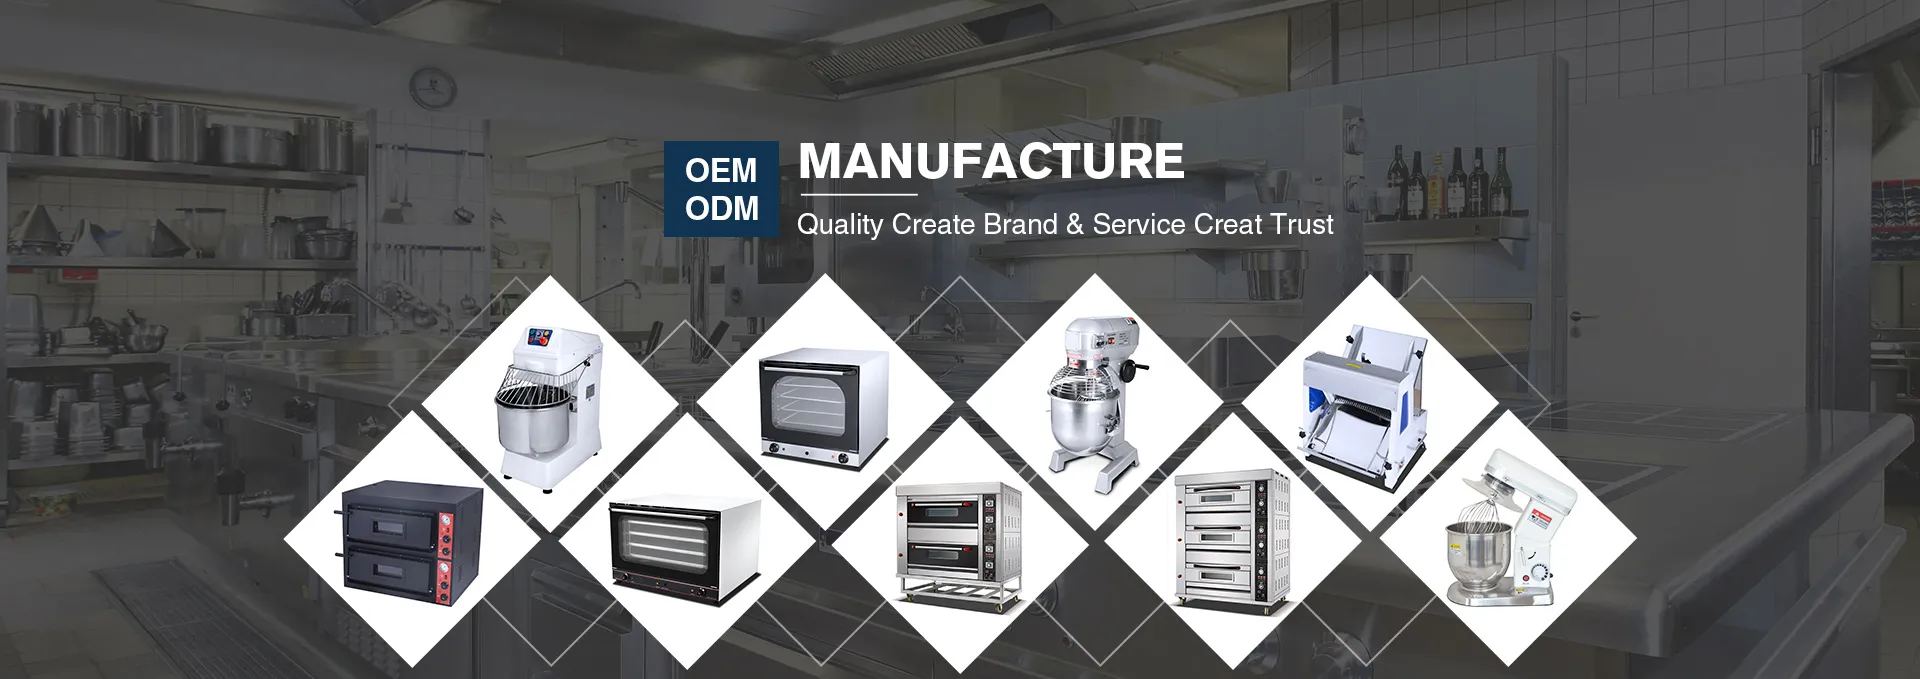 جودة ODM تخلق الثقة بالعلامة التجارية والخدمة